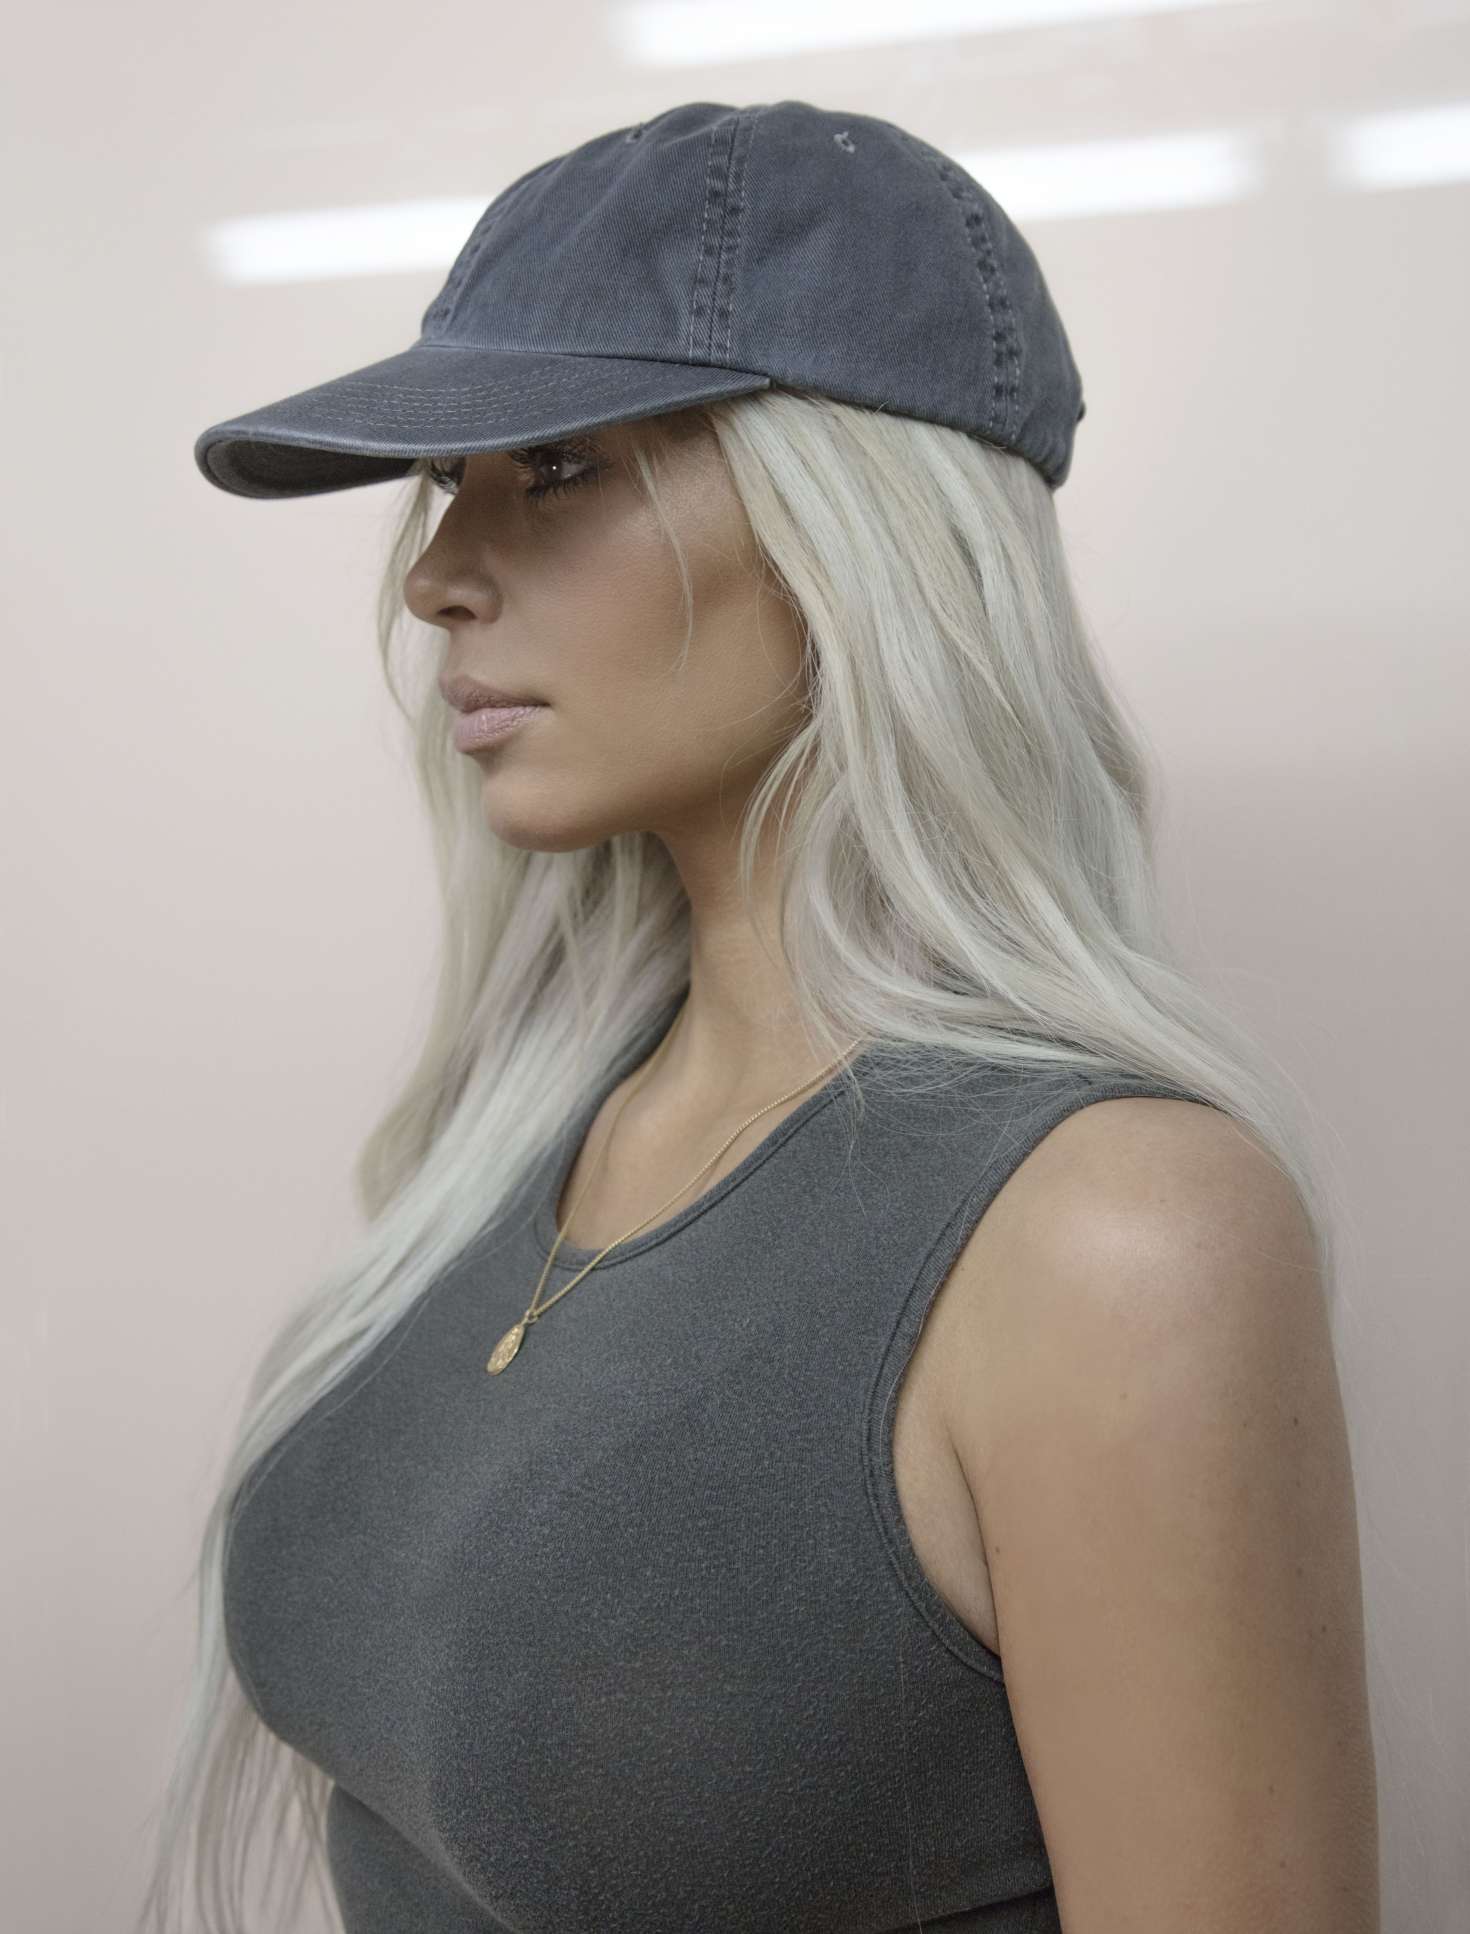 Kim Kardashian â€“ Yeezyâ€™s Season 6 Campaign by Jackie Nickerson